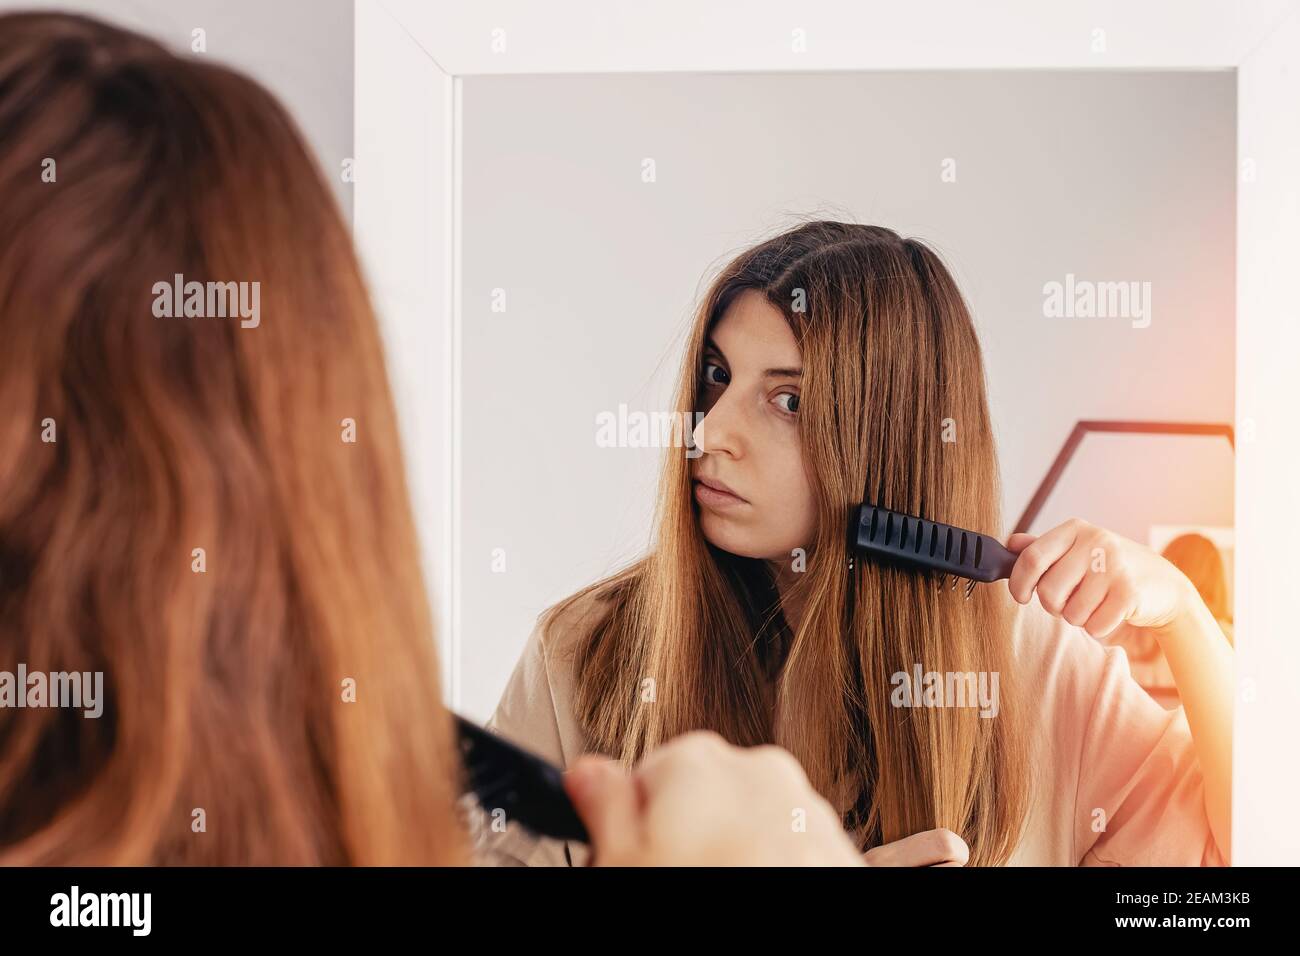 Junge Frau putzt ihr glänzendes langes braunes Haar Stockfoto